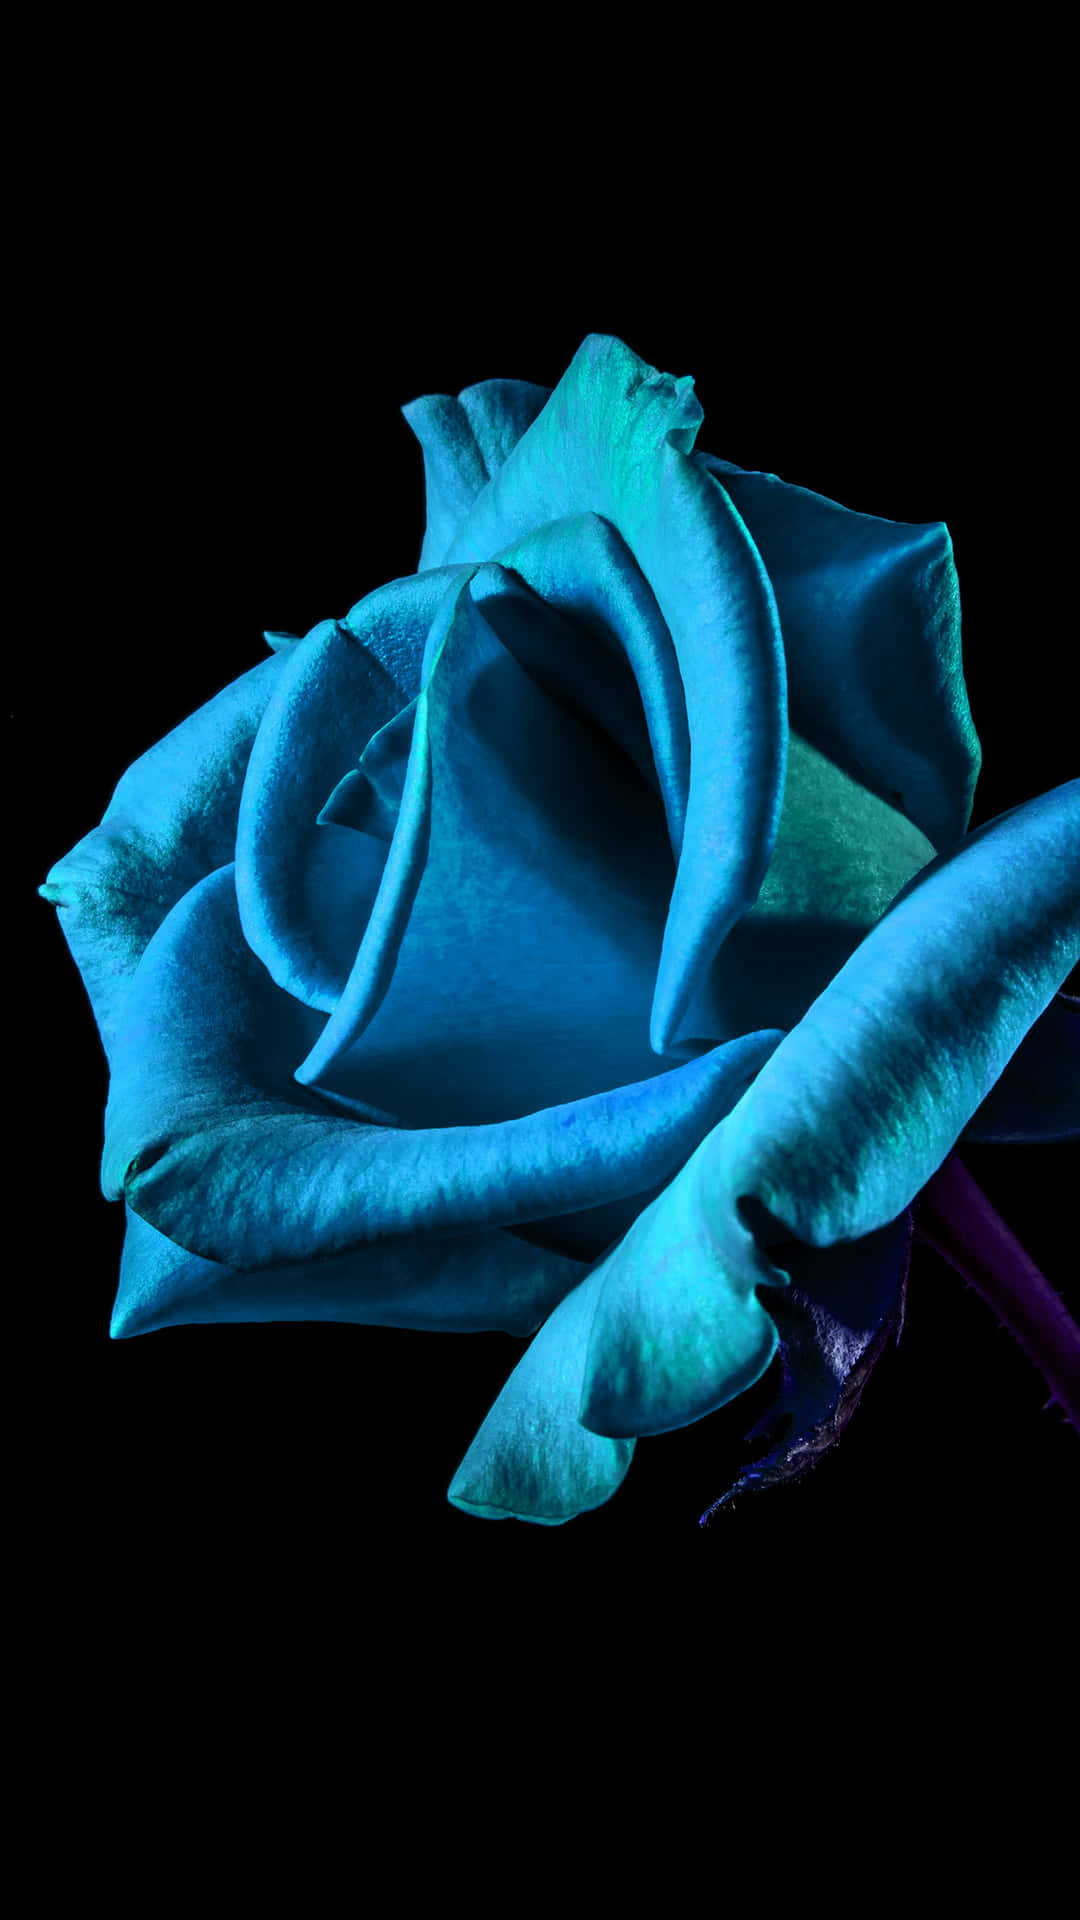 Floriphone De Color Azul Neón En Una Imagen De Arte Digital